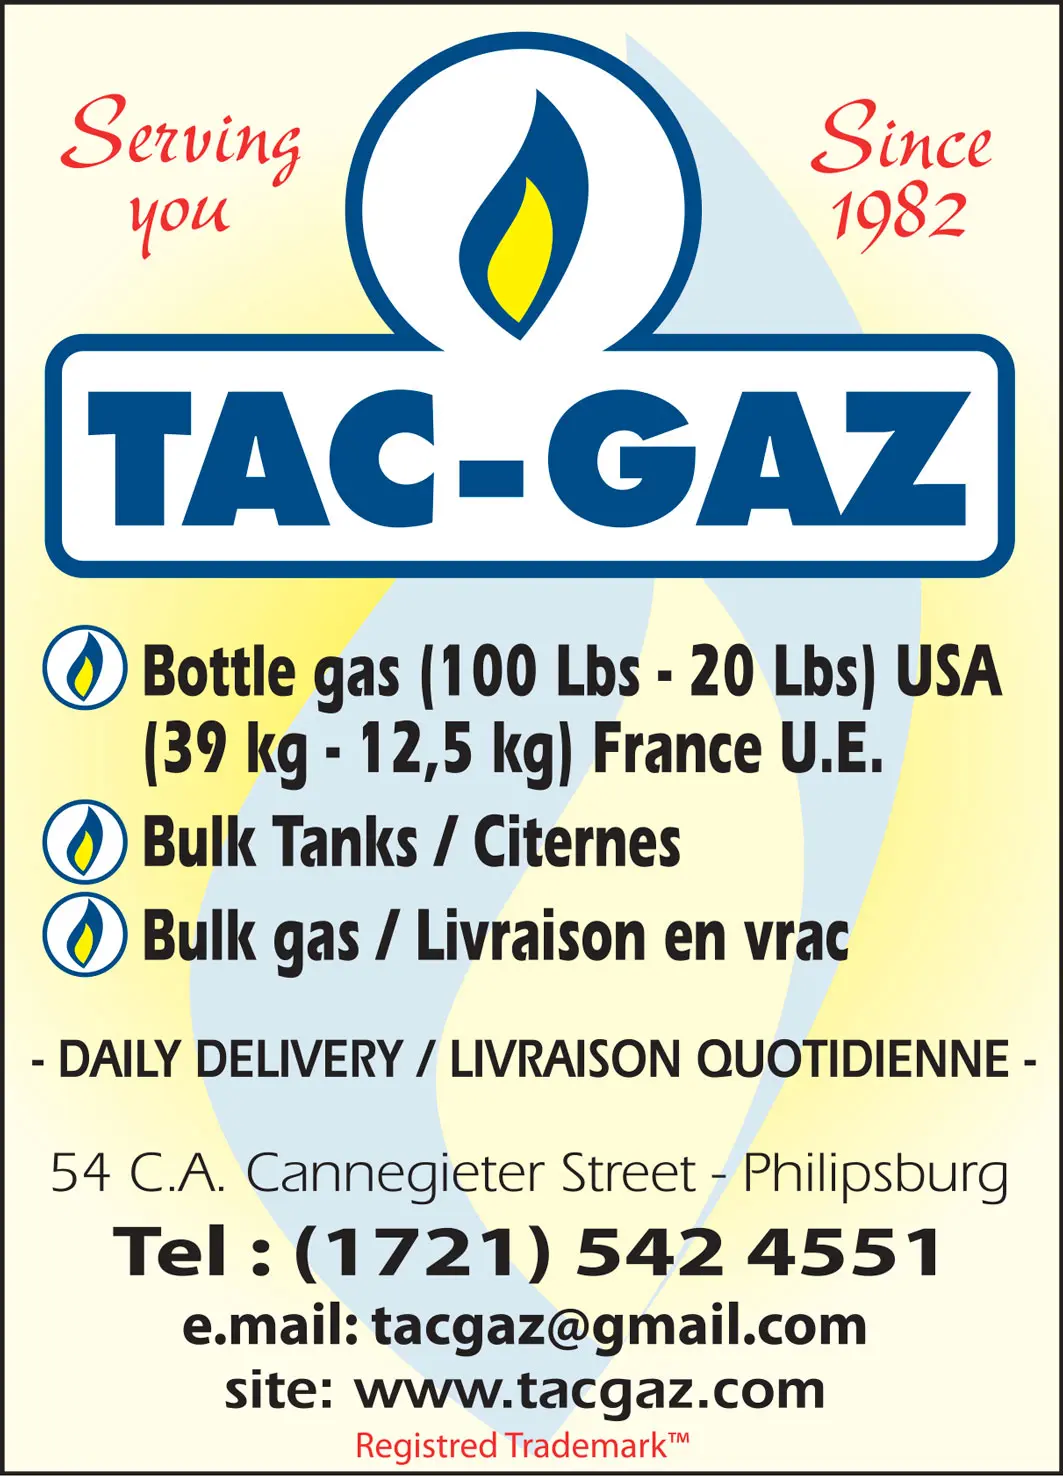 St Maarten Telephone Directory - Tac Gaz